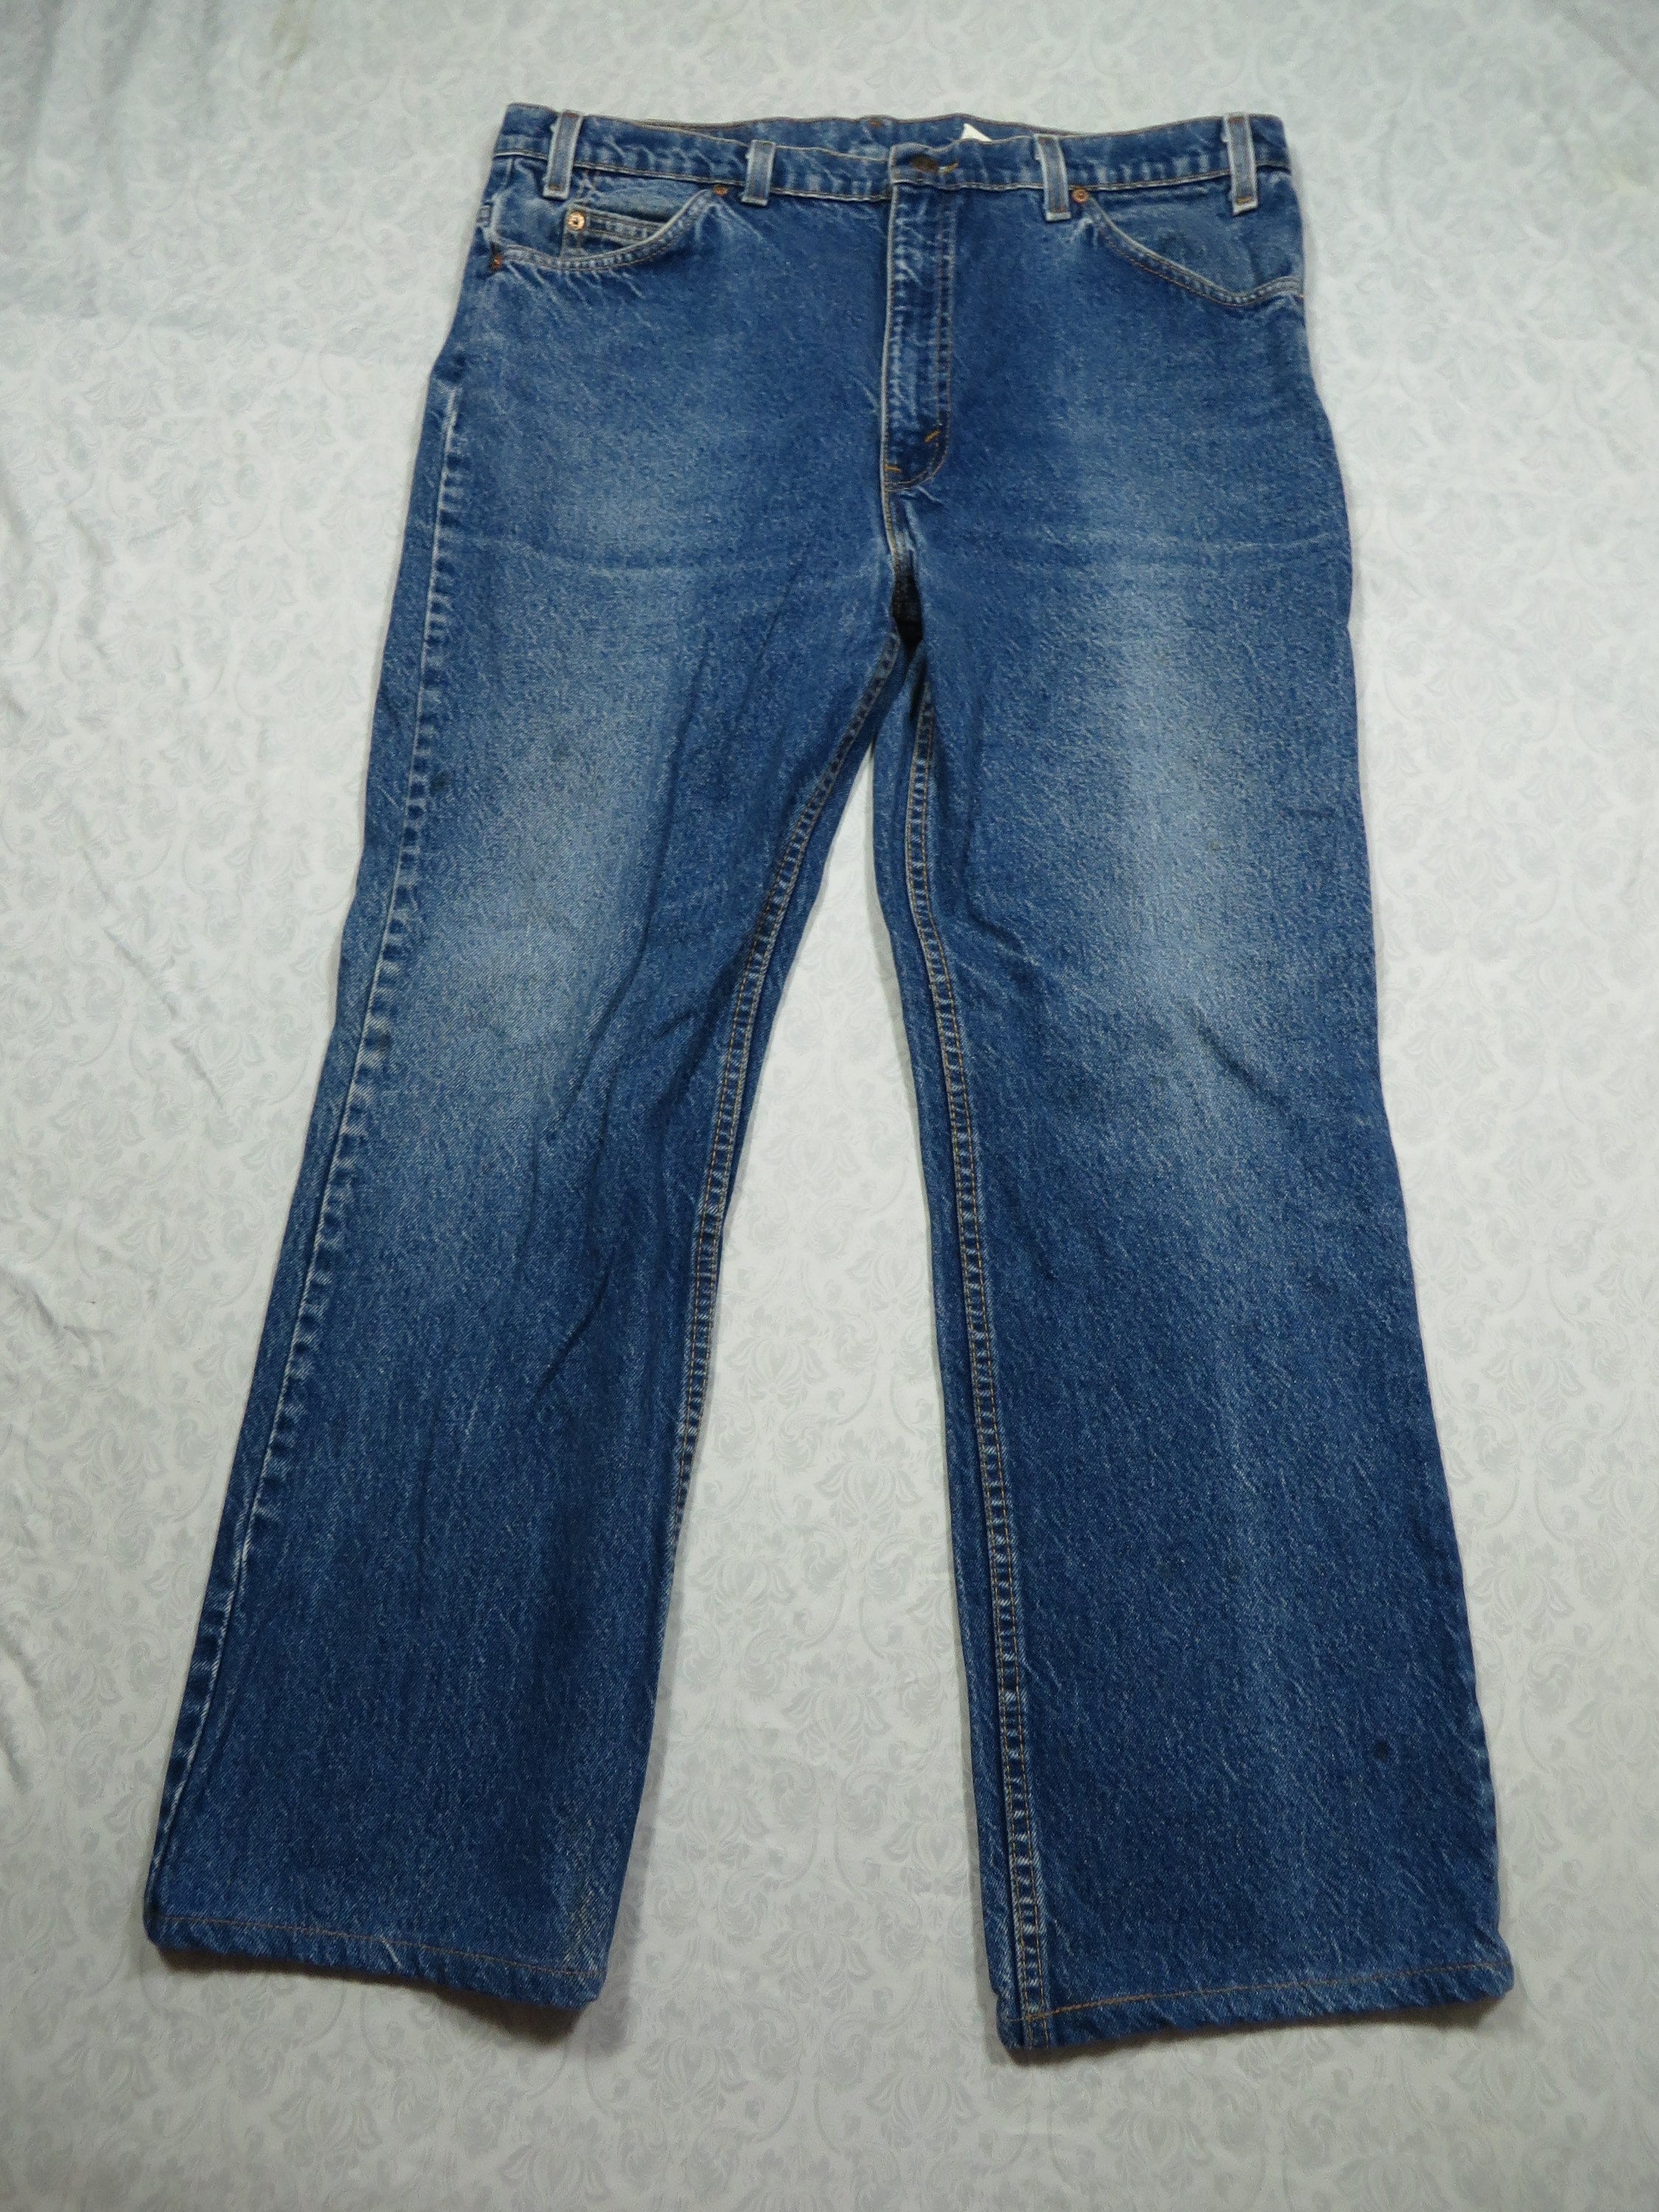 Vintage Levi's 517 Jeans Orange Tab 90's Blue Denim Blank Tab Boot 